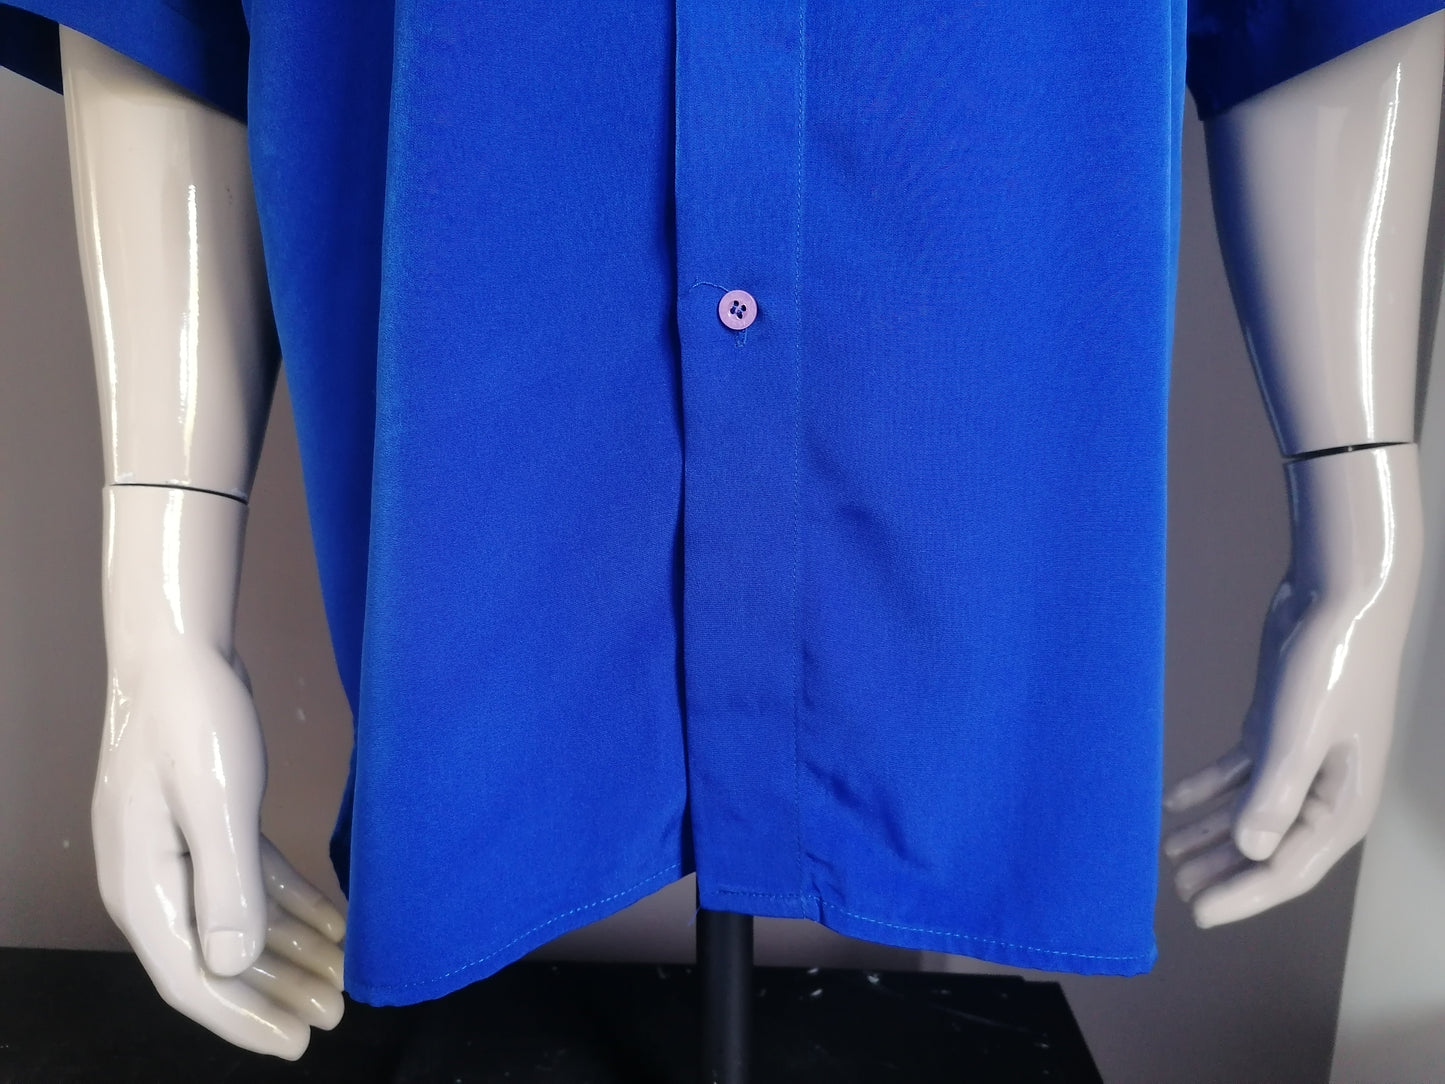 Vintage Versace V2 overhemd korte mouw. Blauw met geborduurde Draak afbeelding. Maat XXL / 2XL.